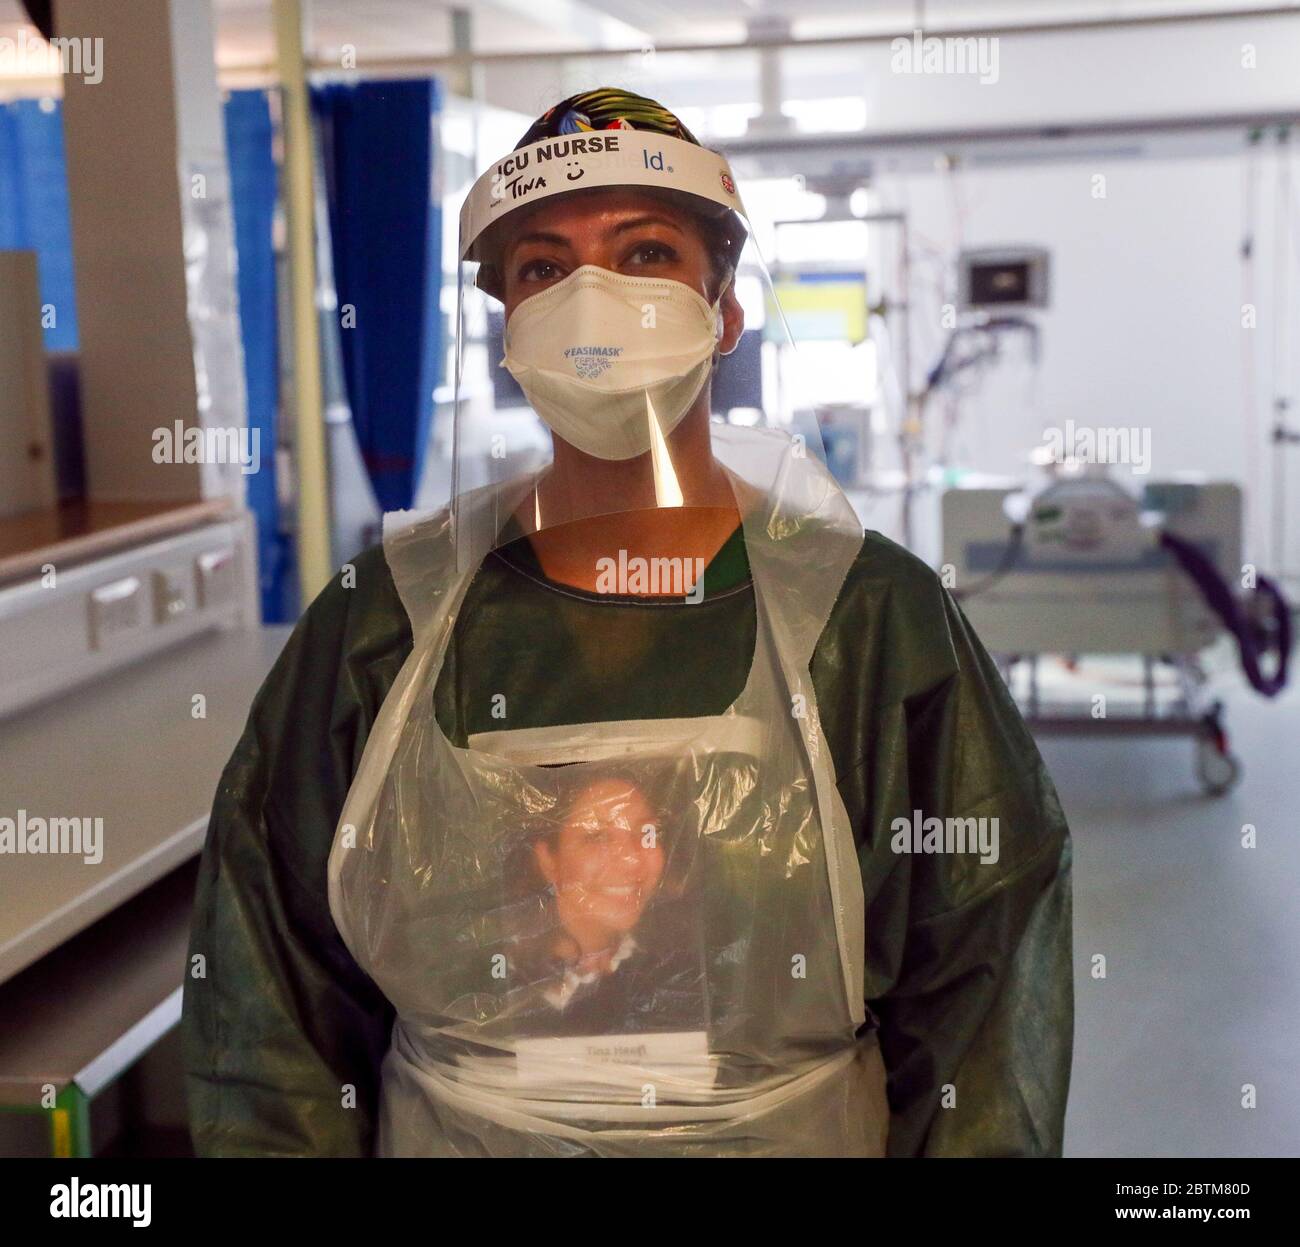 Nurse Tina ha il suo nome sulla visiera e una foto di se stessa sul grembiule in un reparto di terapia intensiva dove sta trattando le vittime del coronavirus nel Frimley Park Hospital di Surrey. Data immagine: 22/5/2020. Foto Stock